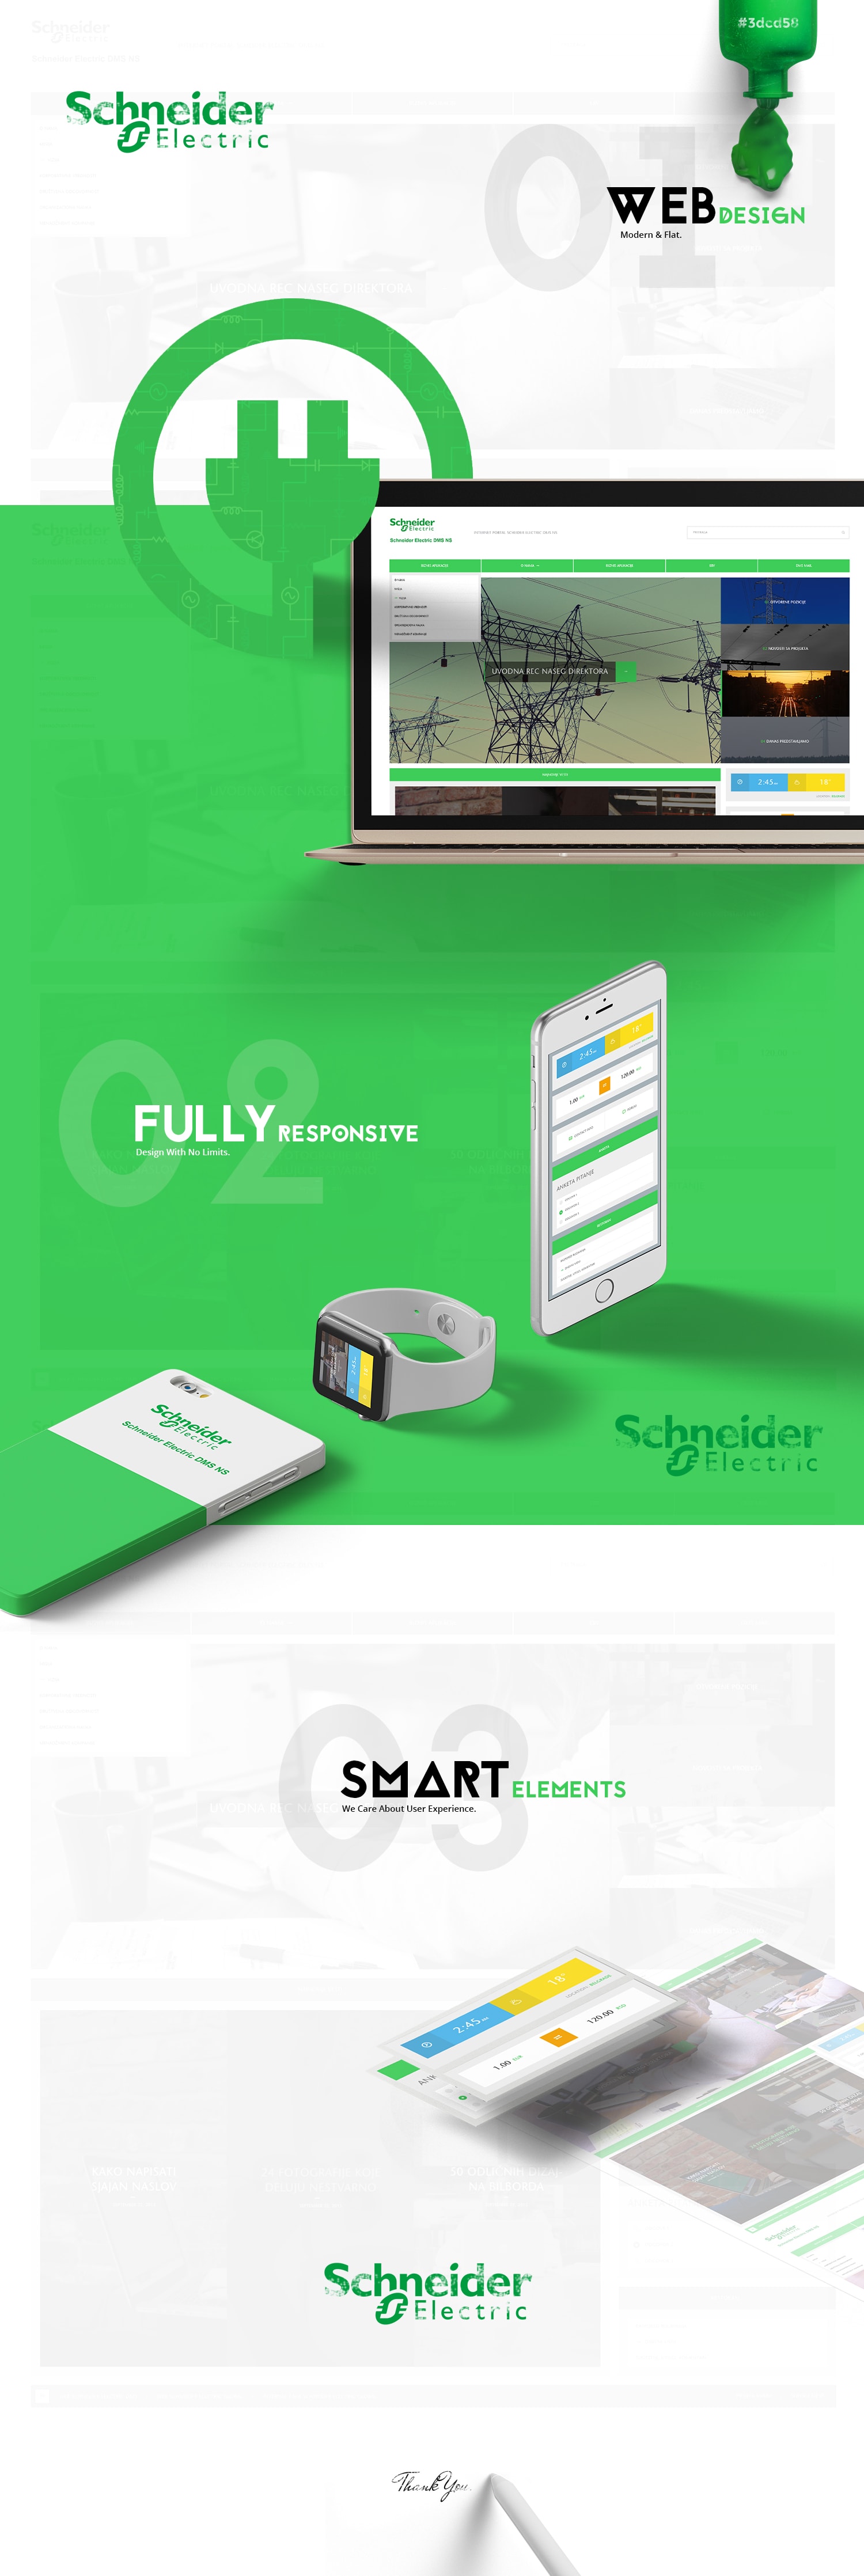 Schneider Electric website design